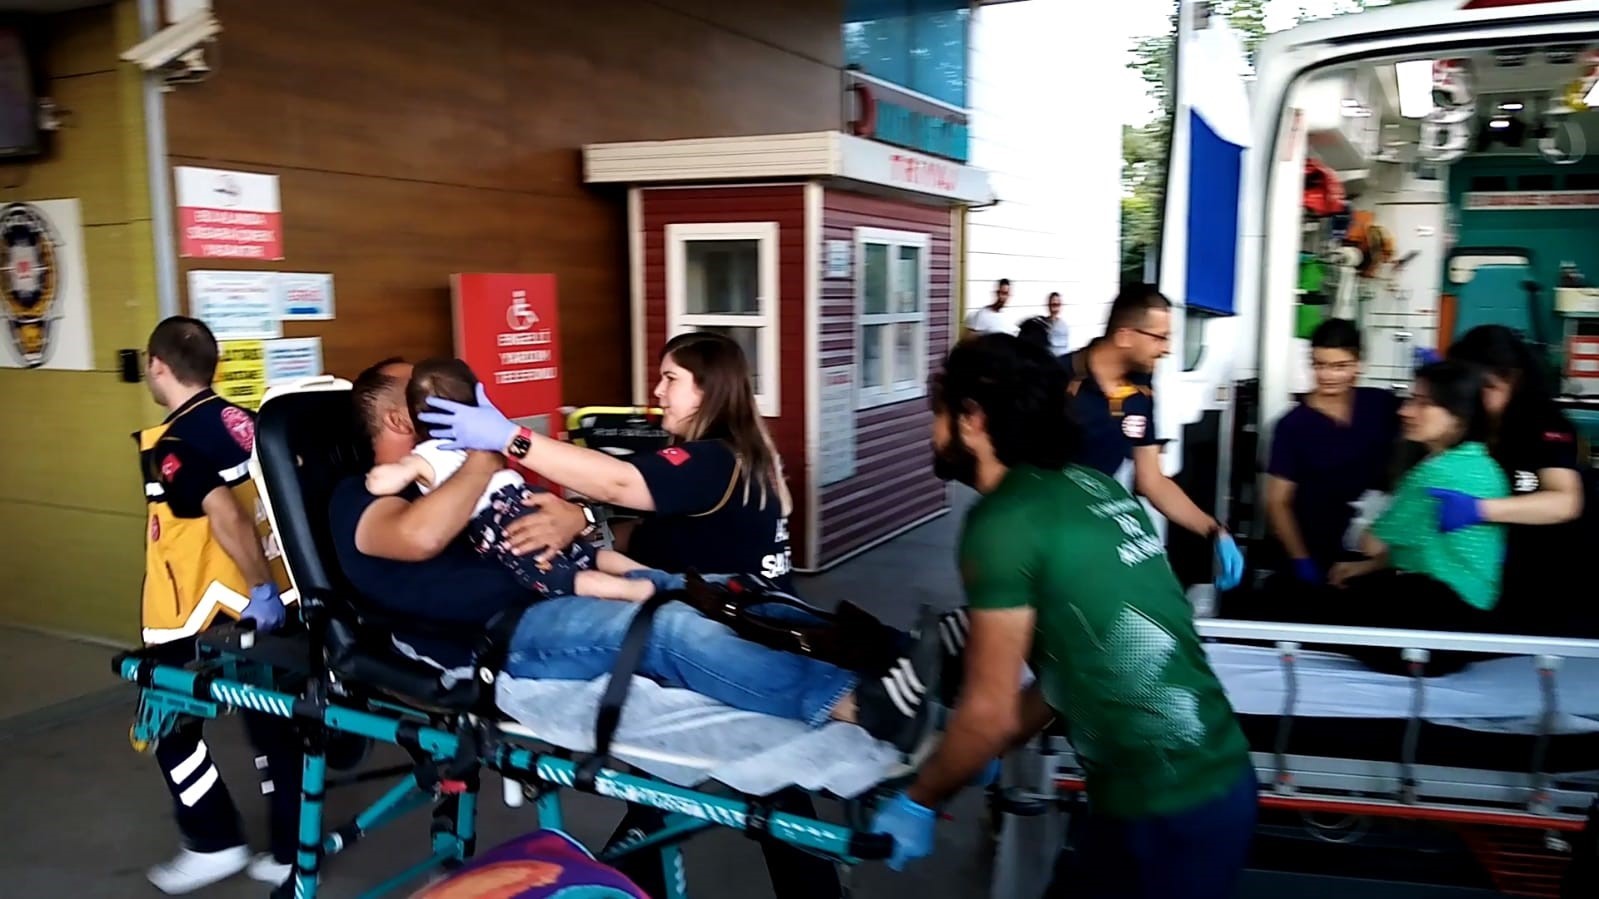 Bursa’da 2 otomobil kafa kafaya çarpıştı: 1’i bebek 6 kişi yaralandı